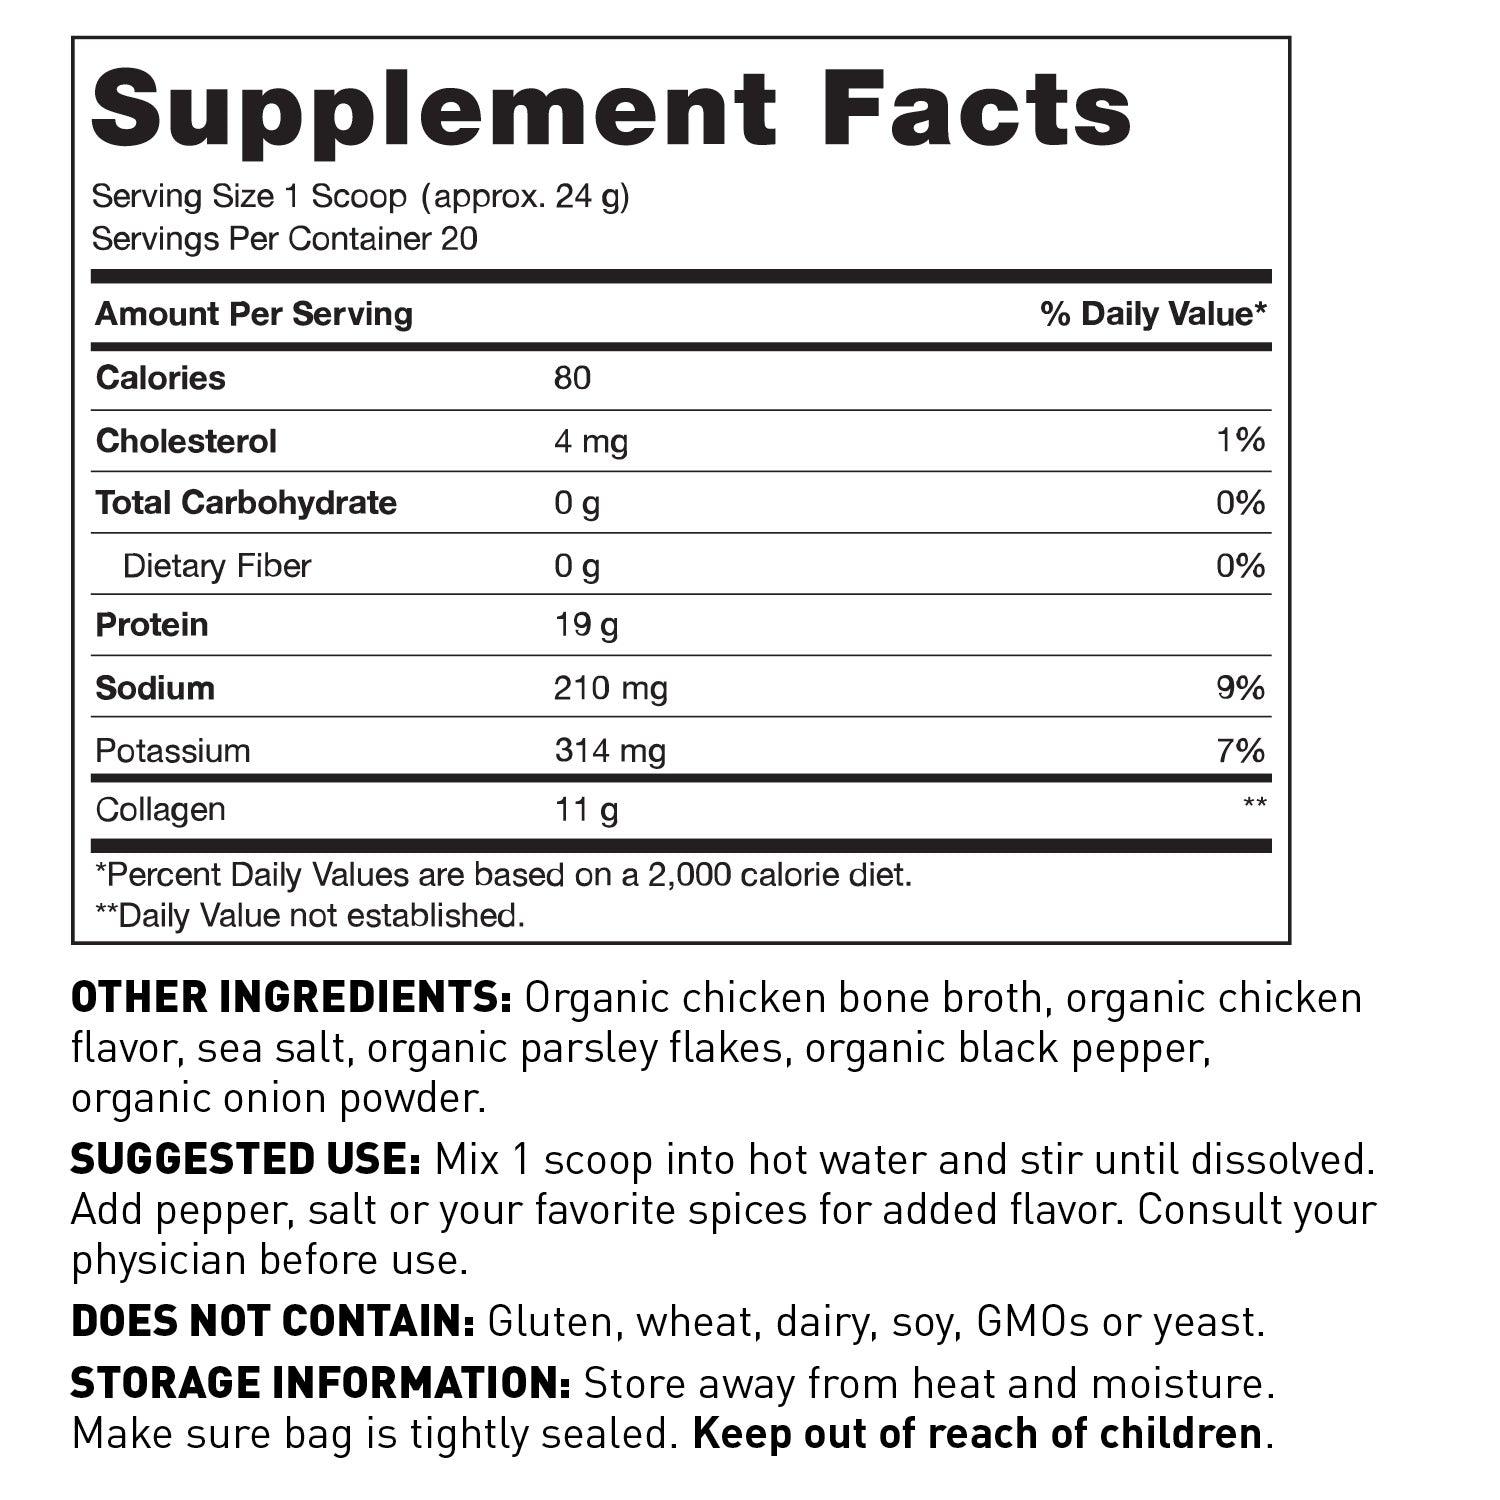 Chicken Bone Broth supplement facts.